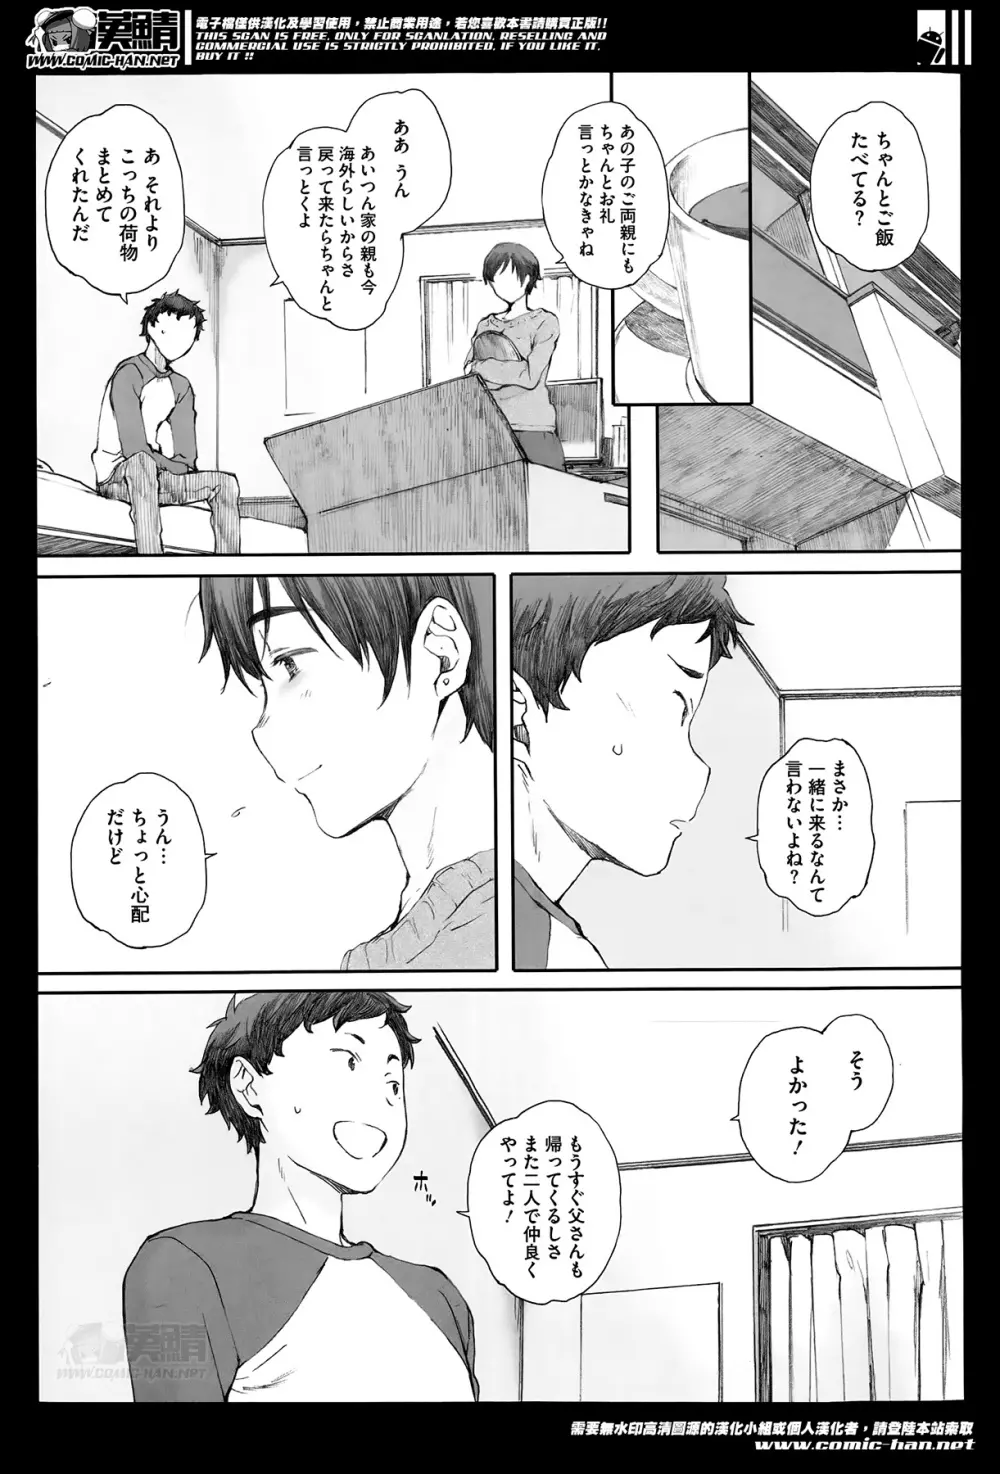 Kamakiri no su Ch.01-02 45ページ